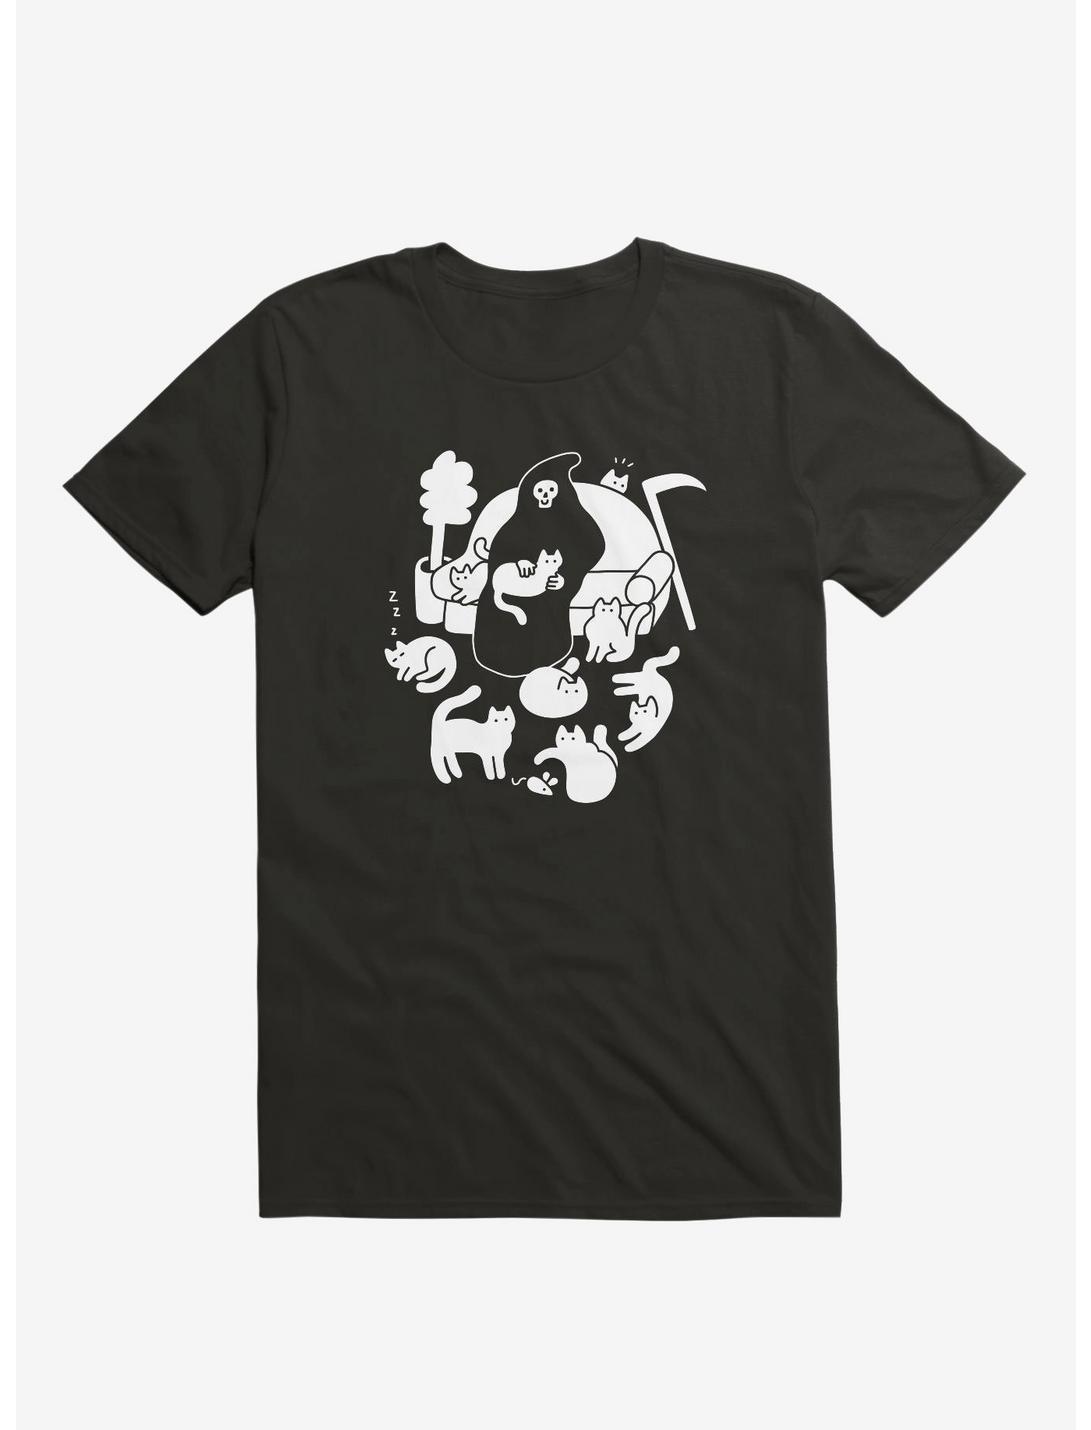 9 Lives Cat Reaper Black T-Shirt, BLACK, hi-res